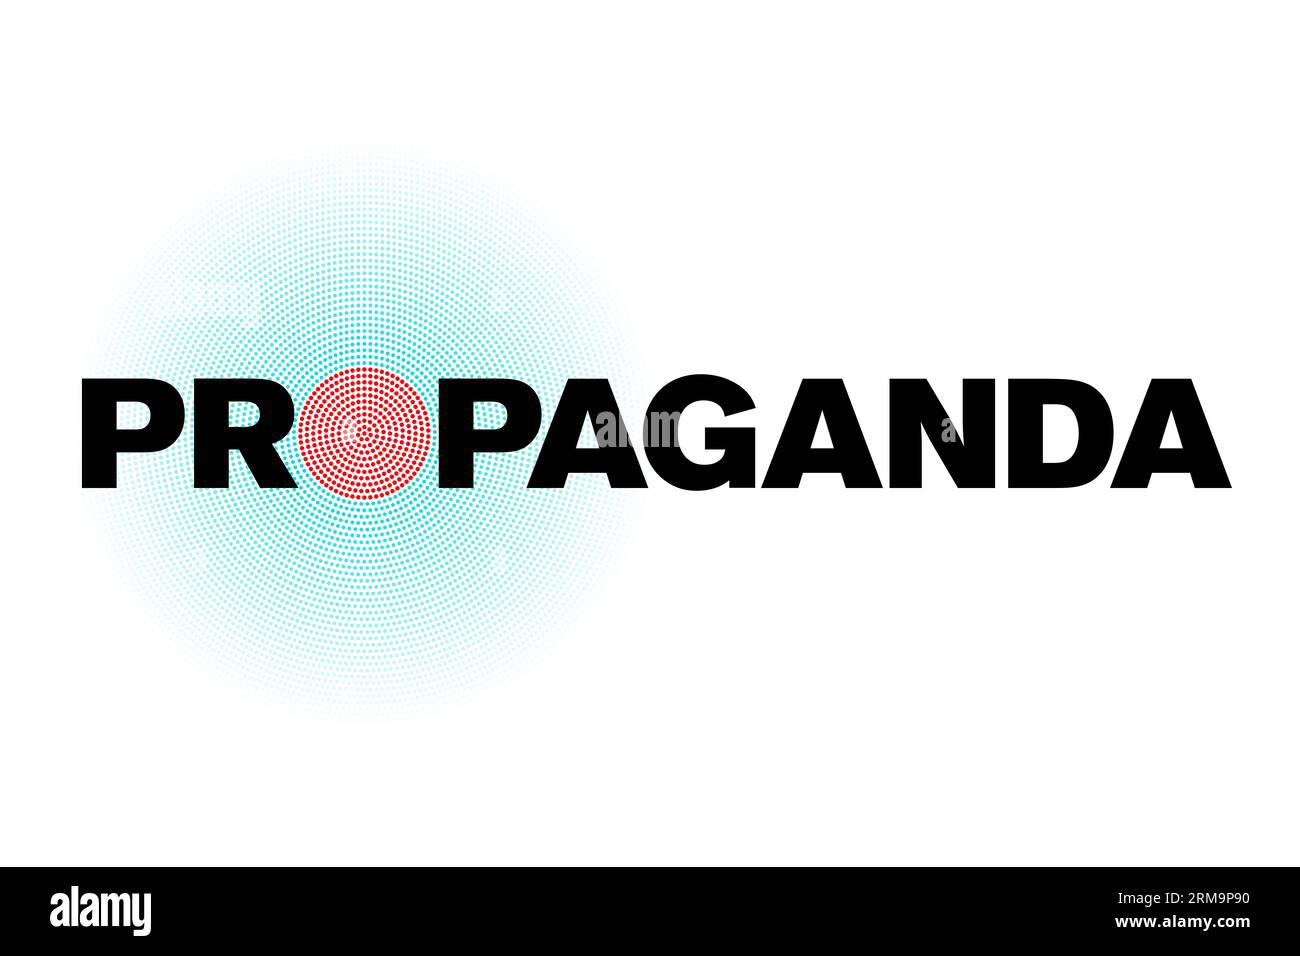 Le mot Propaganda est écrit en lettres majuscules noires en gras, à l'exception de la lettre O, à la place de laquelle est placé un cercle de points rouges. Banque D'Images